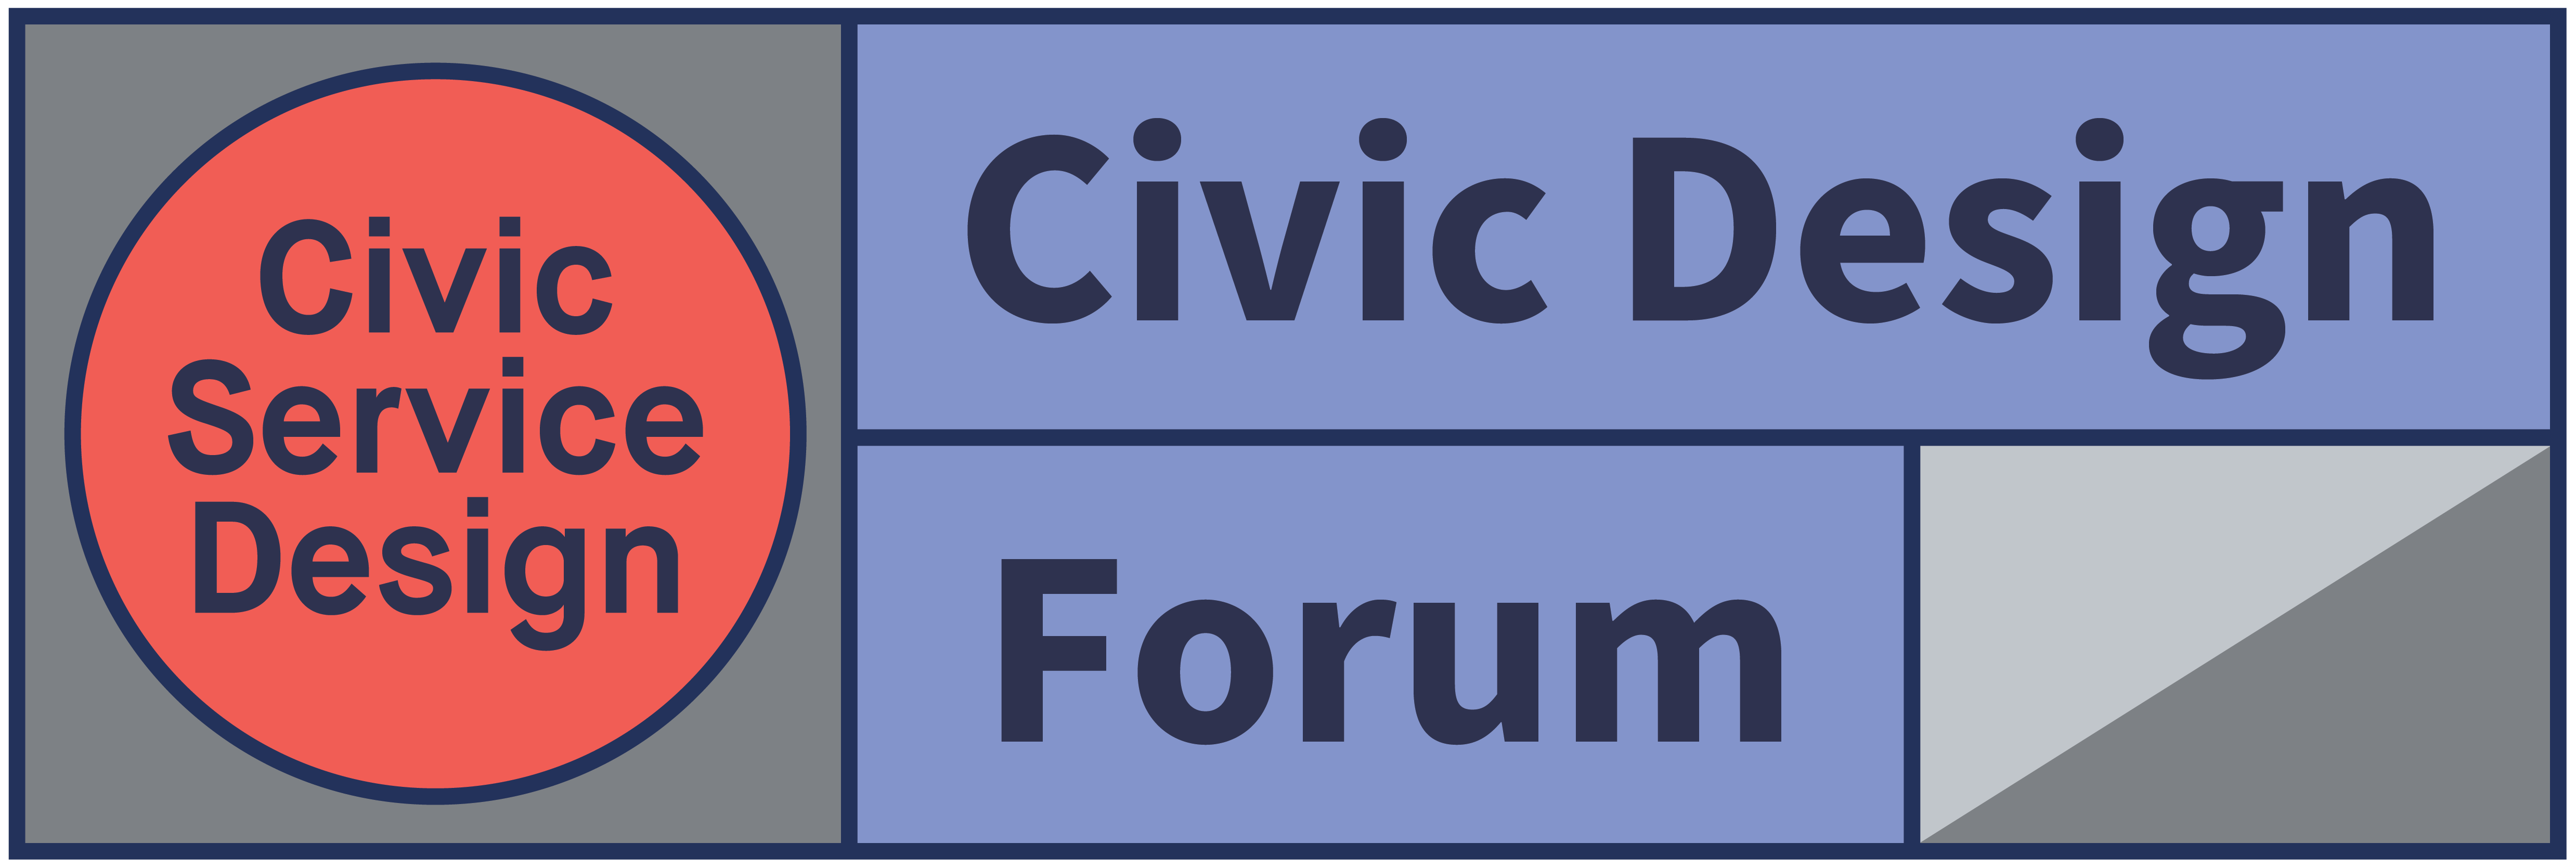 Civic Design Forum